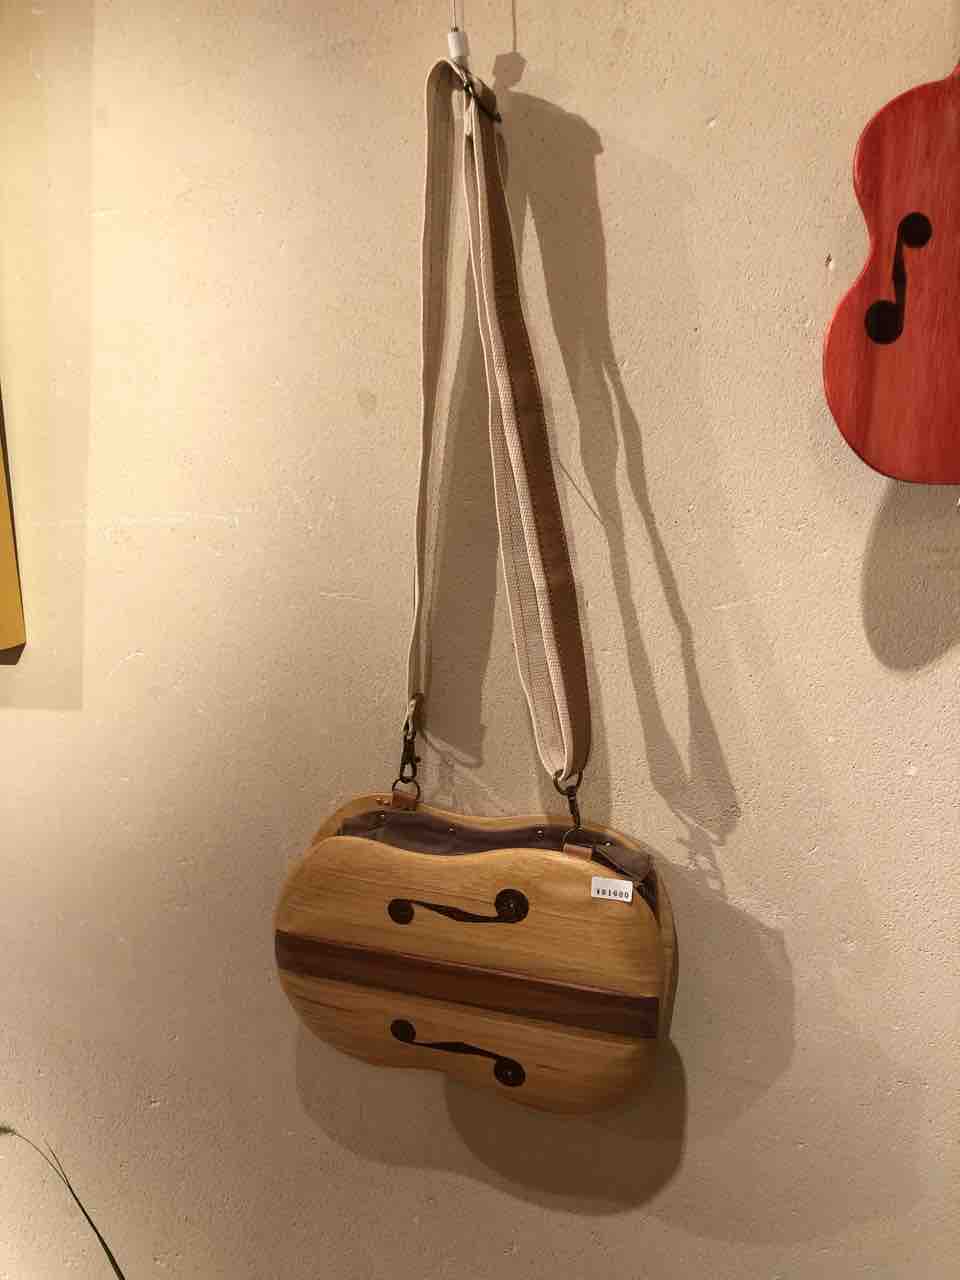 『木工 中村幸人 ―木の調べ展ー』バイオリンのバッグ